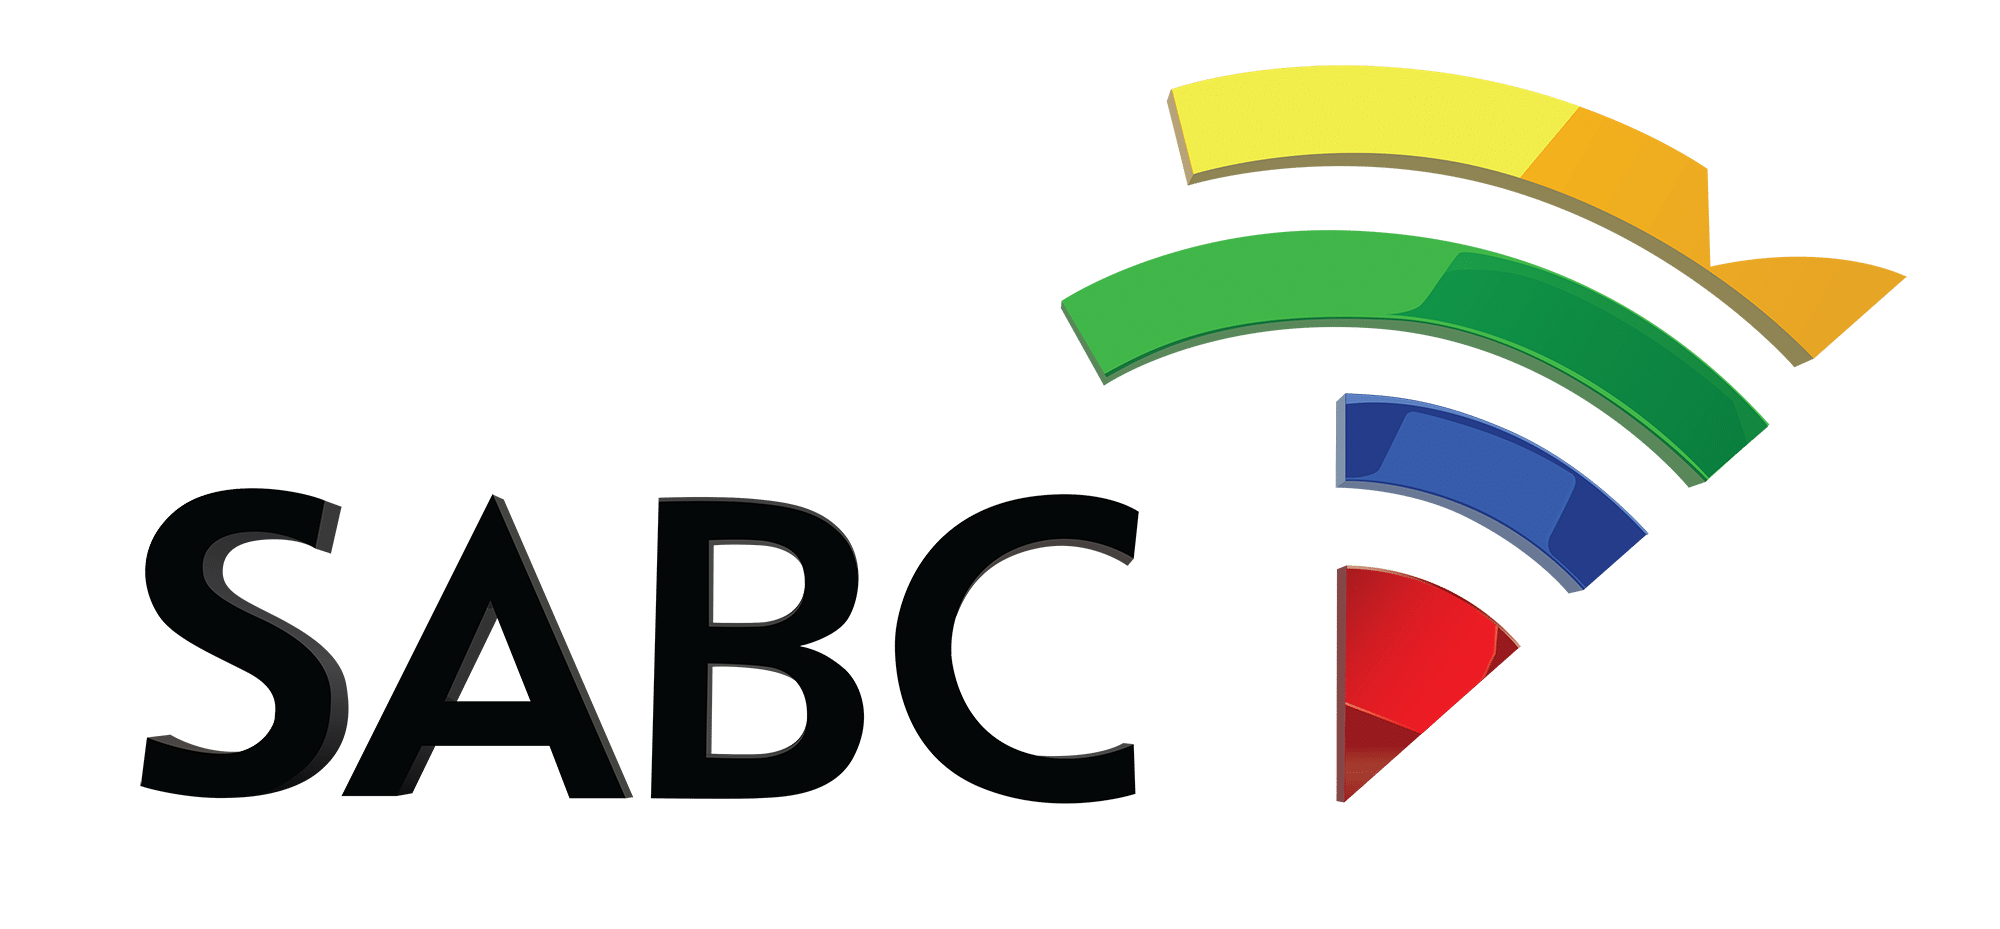 SABC logo